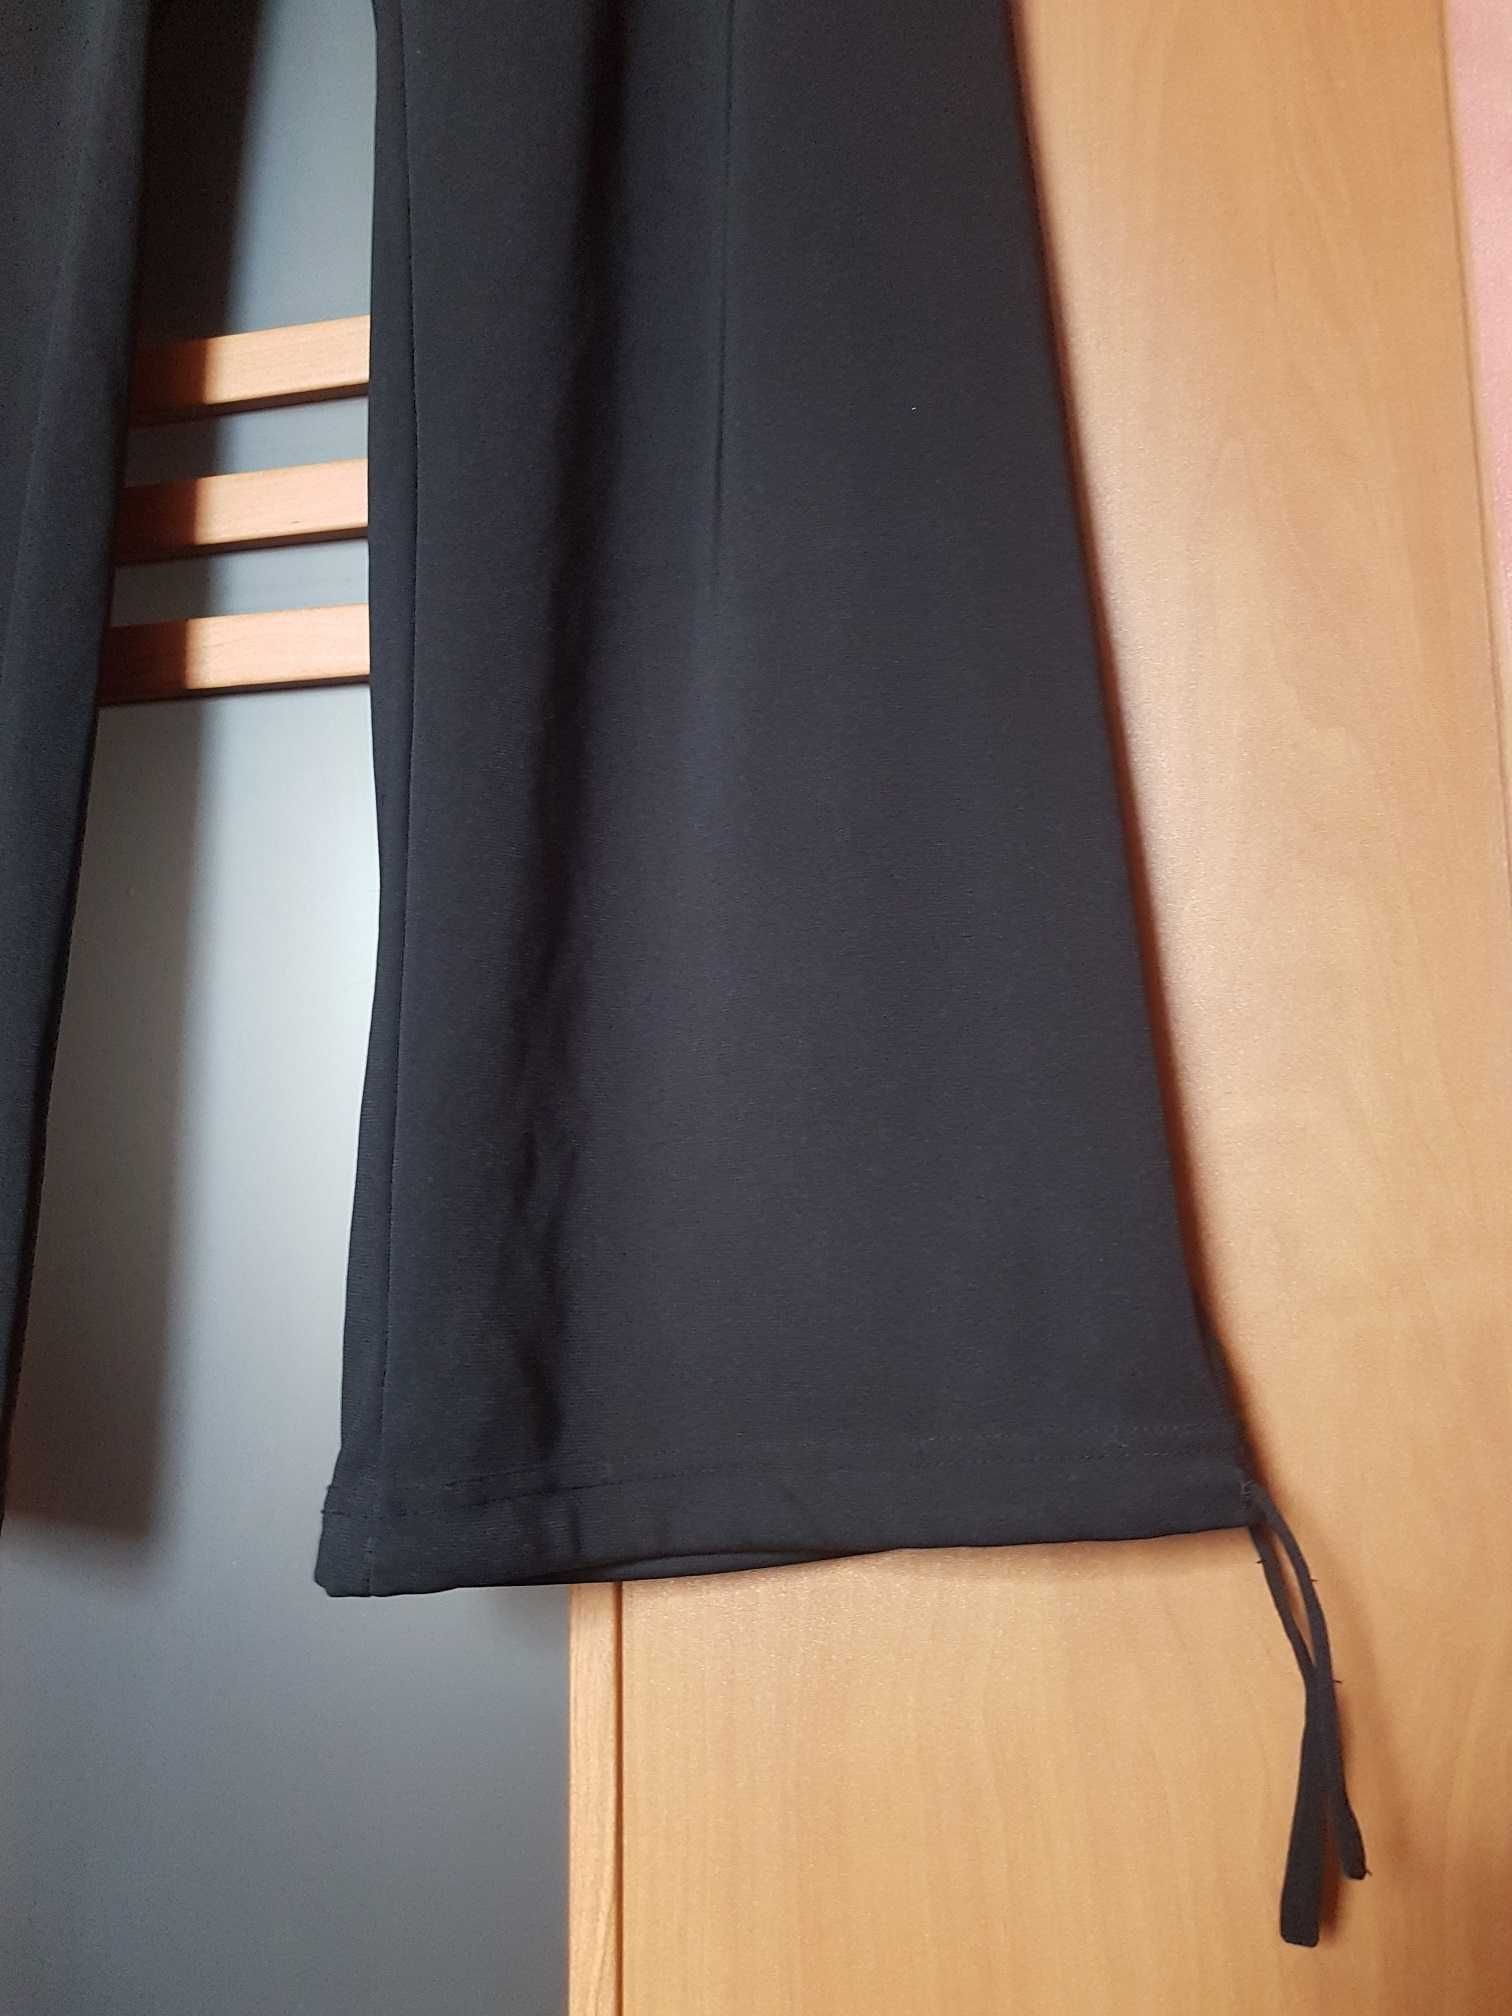 Spodnie czarne, szerokie nogawki, wiązanie w pasie, nogawkach, r. 42